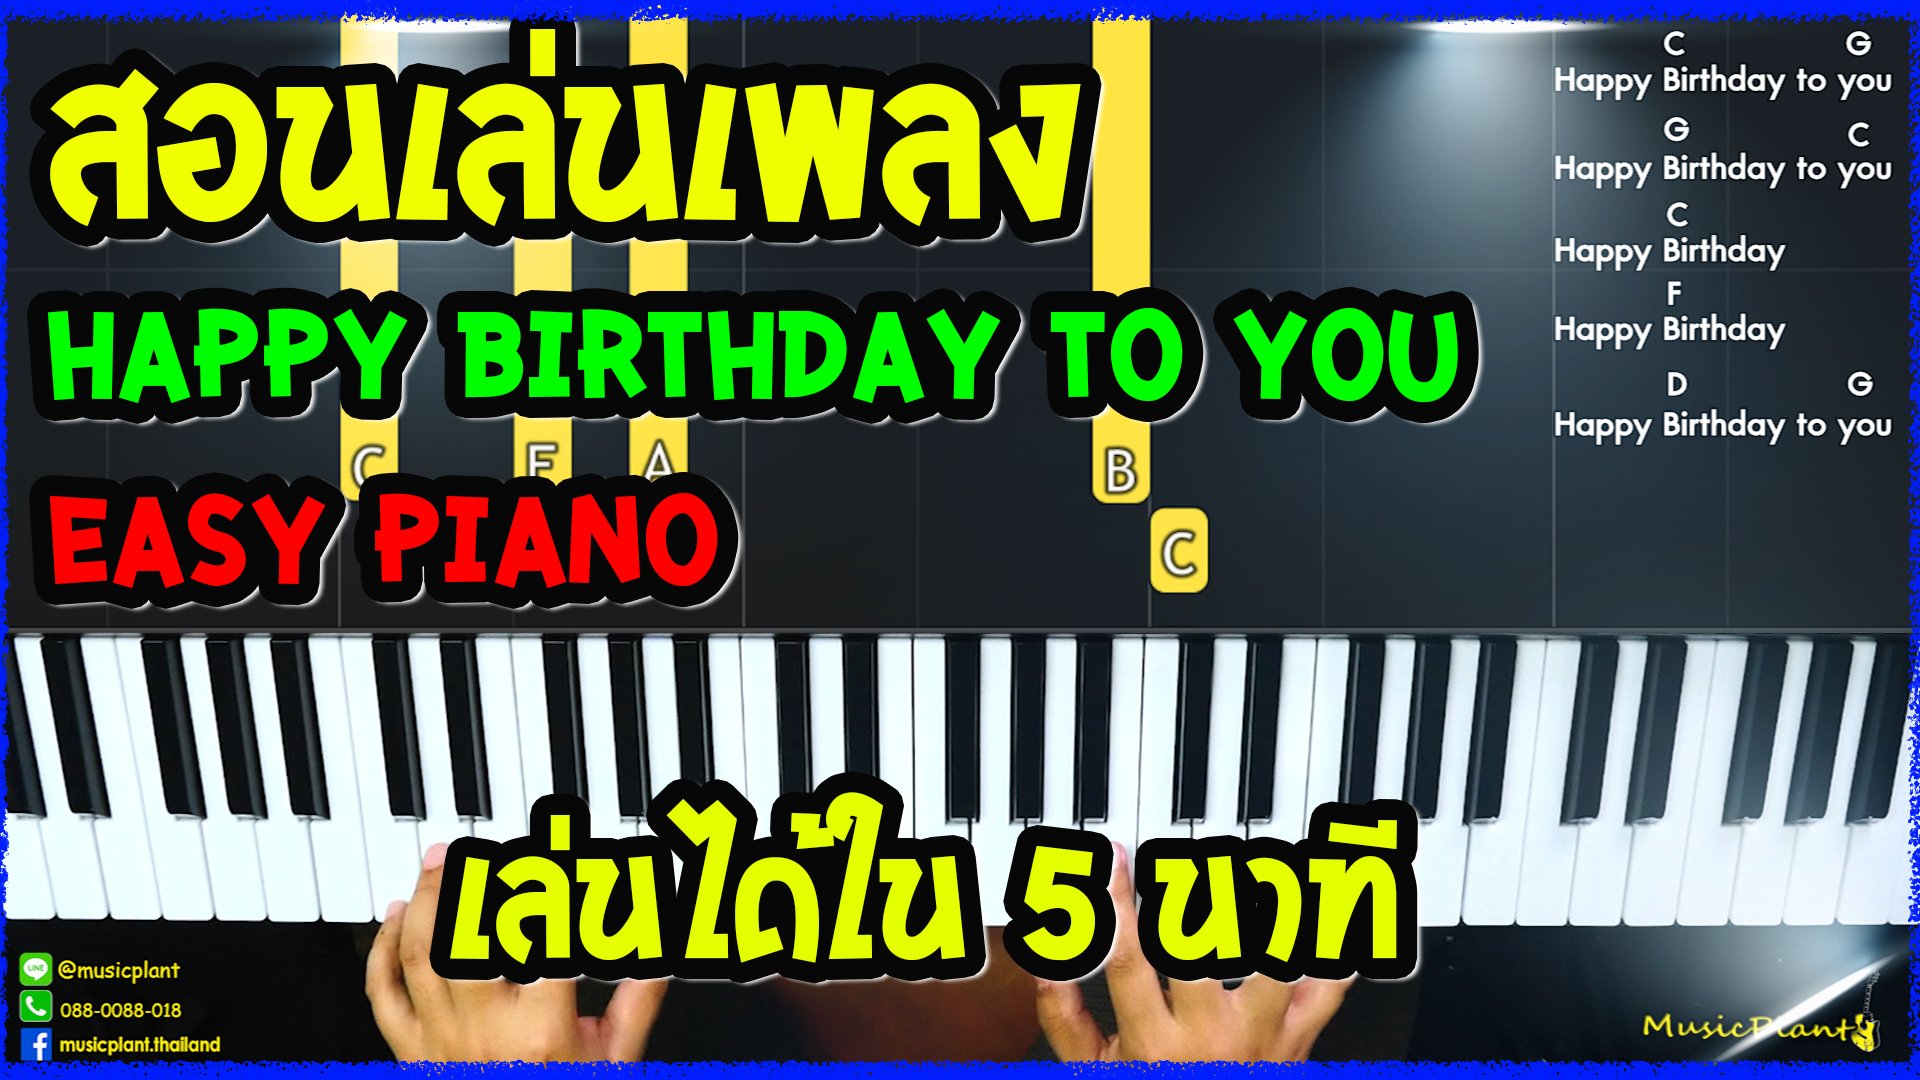 สอนเปียโน&คีย์บอร์ด Happy Birthday to You ง่ายๆ ใน 5 นาที